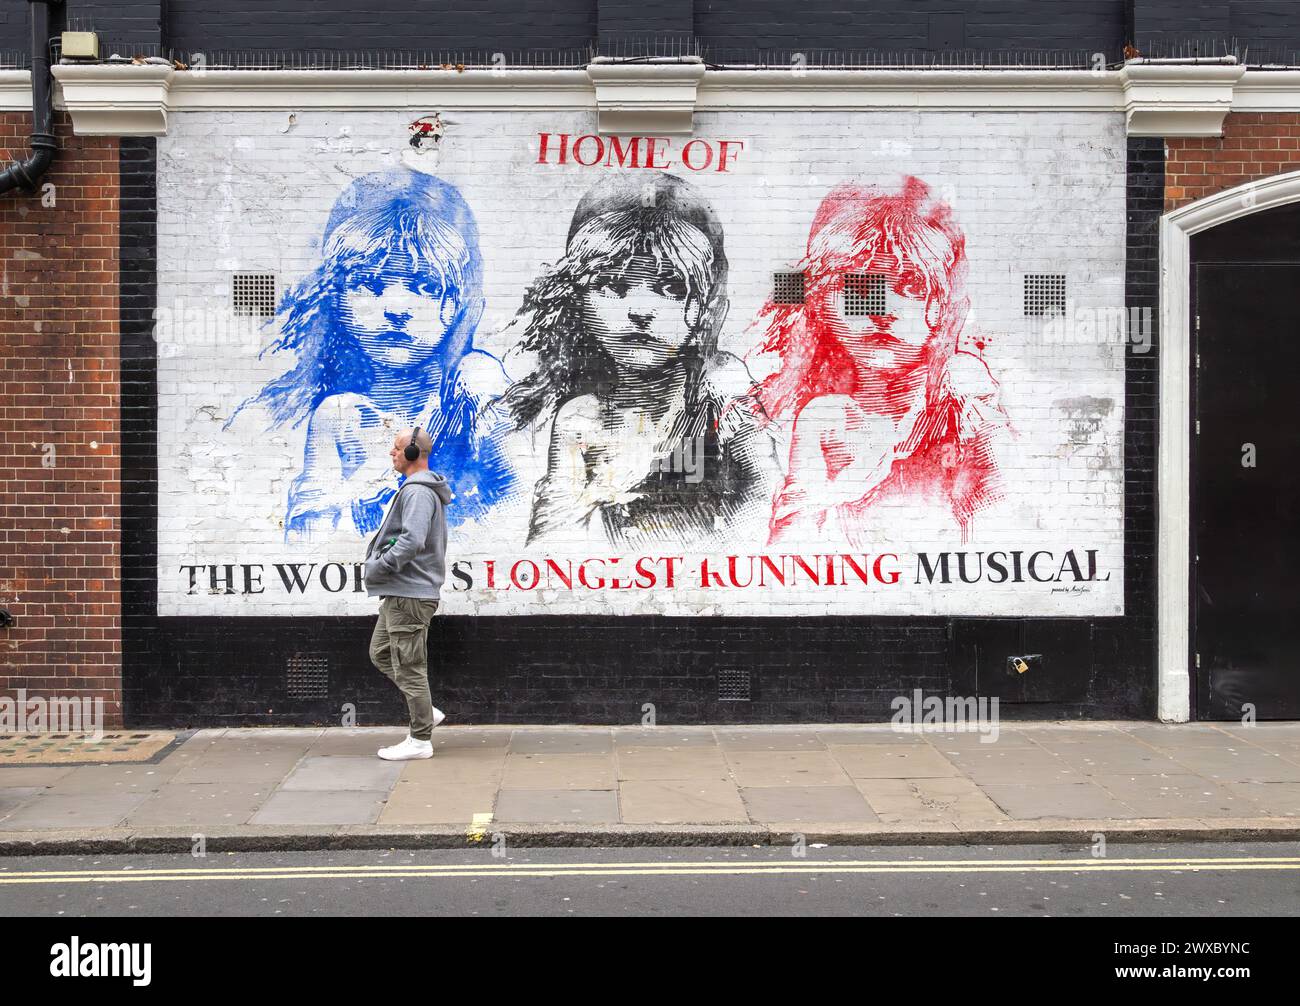 Une image frappante de Cosette peinte sur un mur au théâtre Gielgud à Soho, Londres. La maison de la plus ancienne comédie musicale du monde les Misérables. Banque D'Images